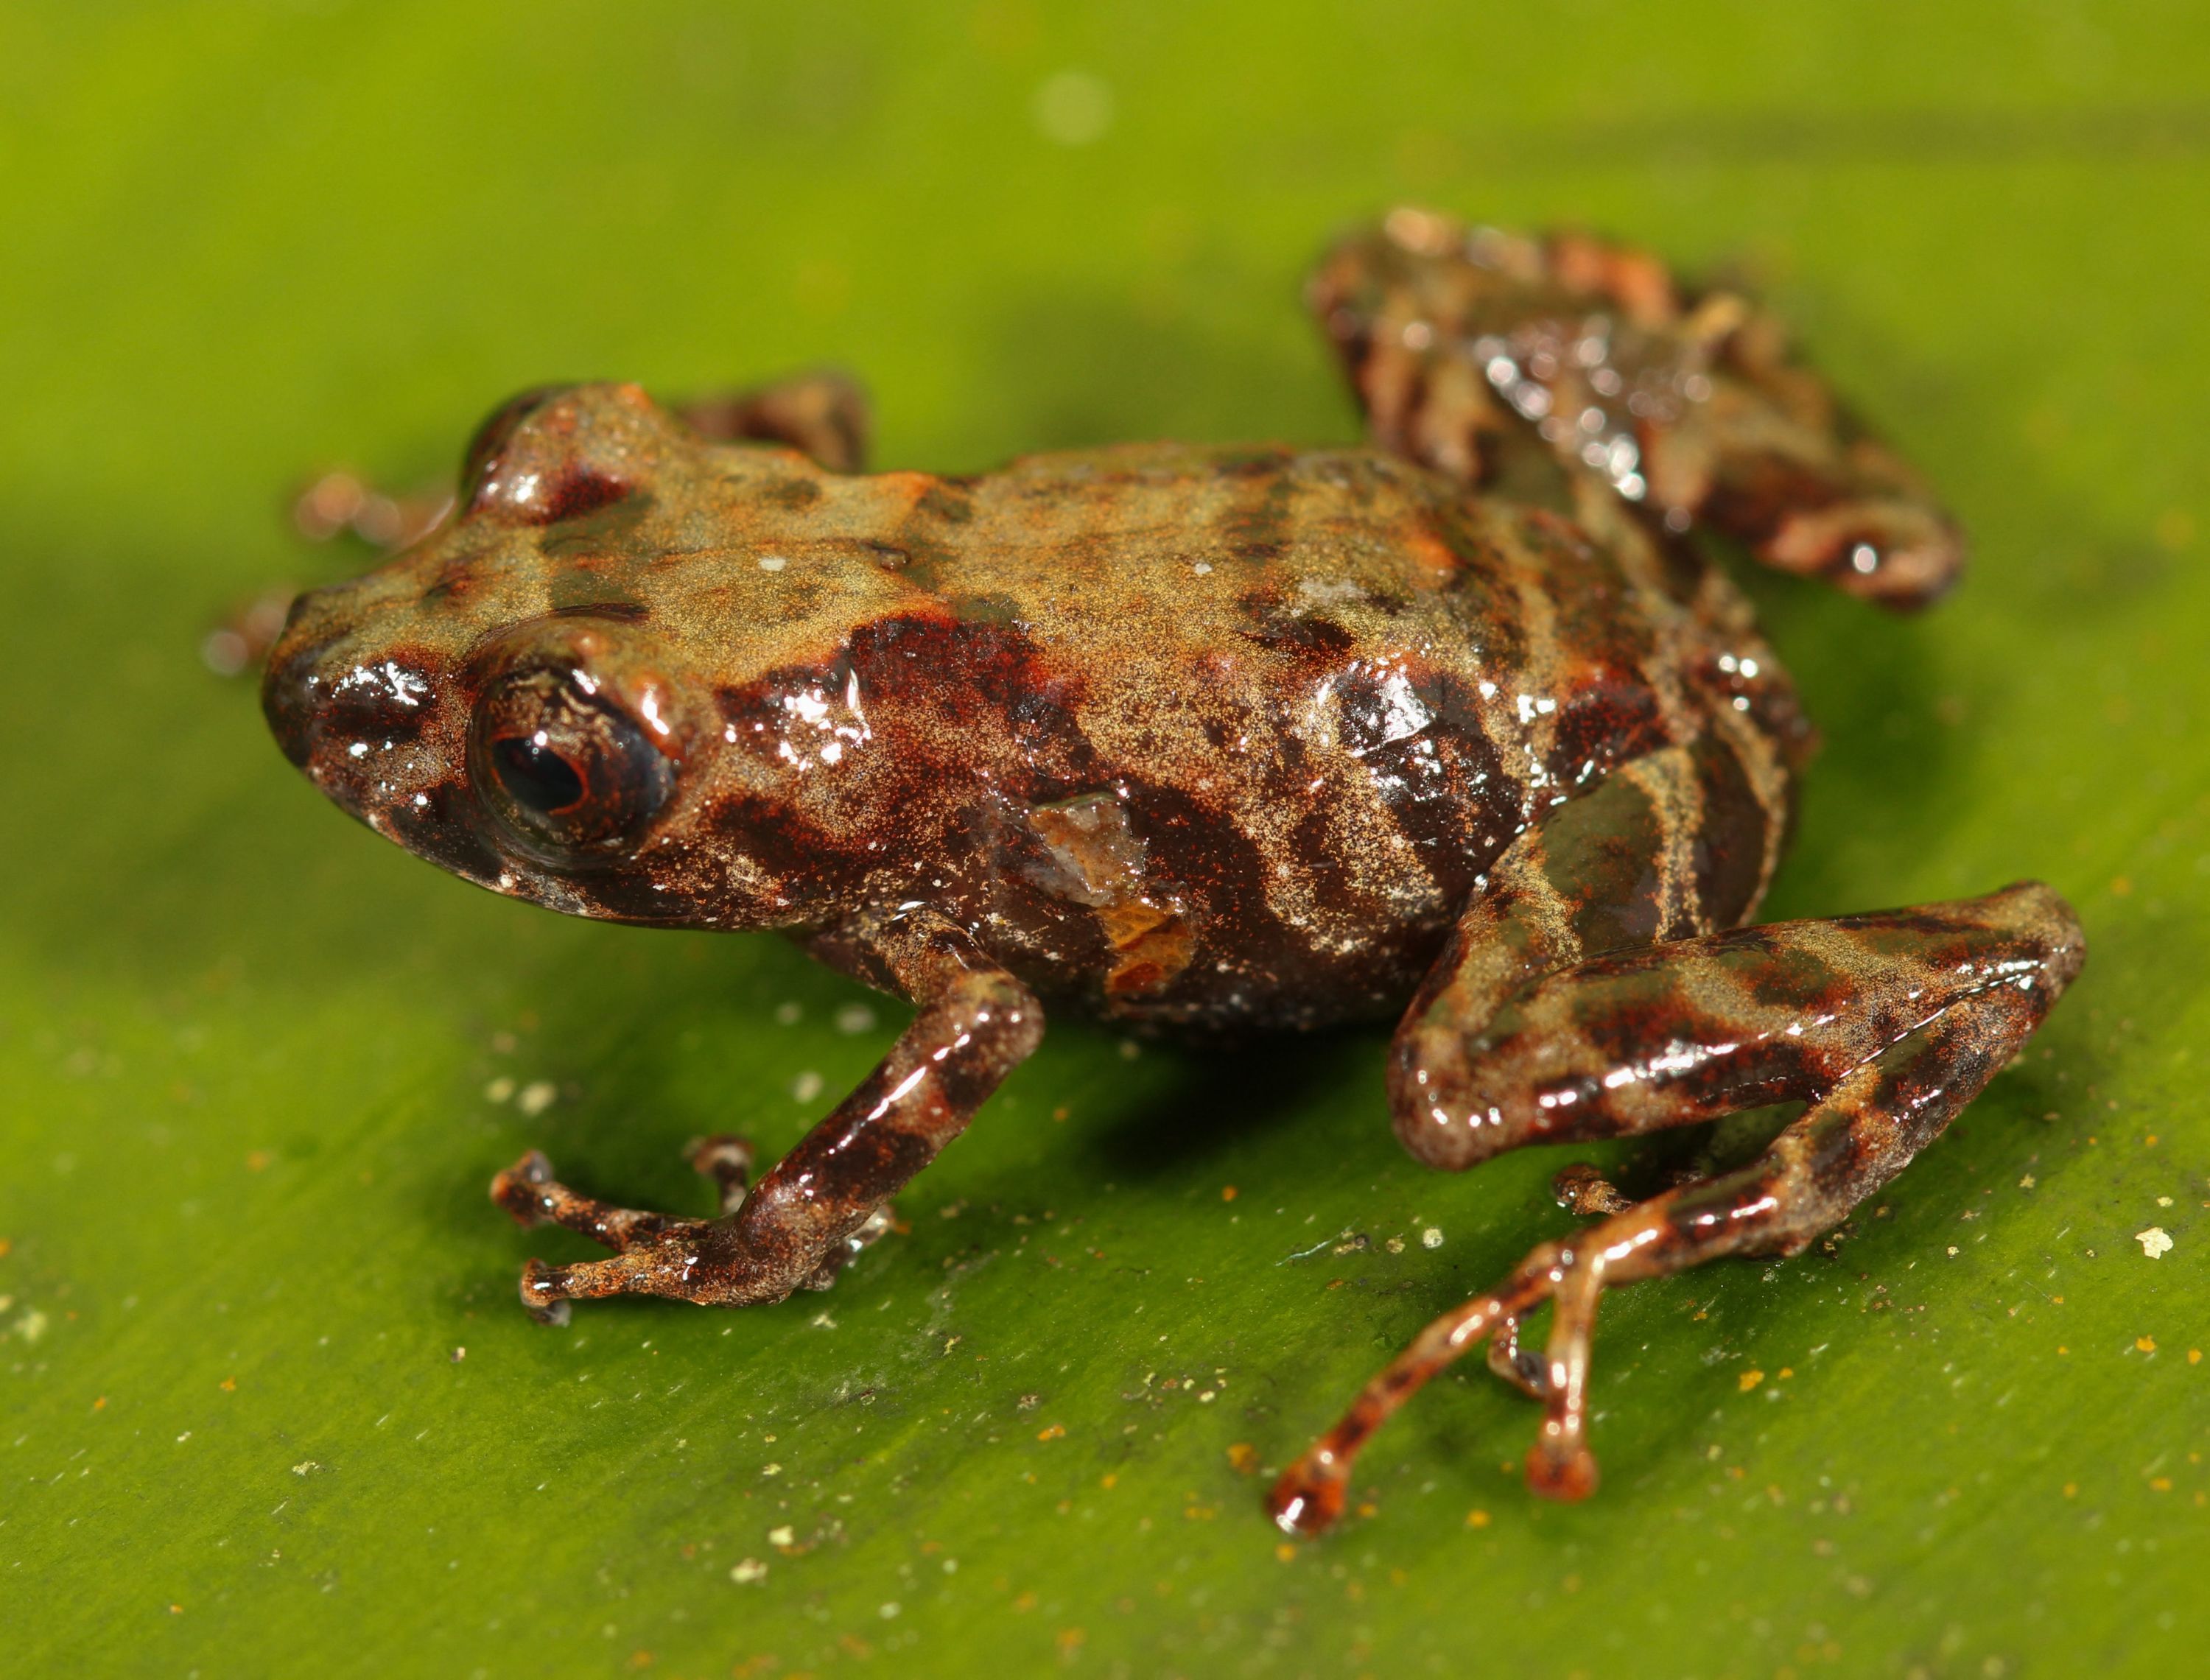 Une nouvelle espèce de grenouille découverte en forêt ienne péruvienne